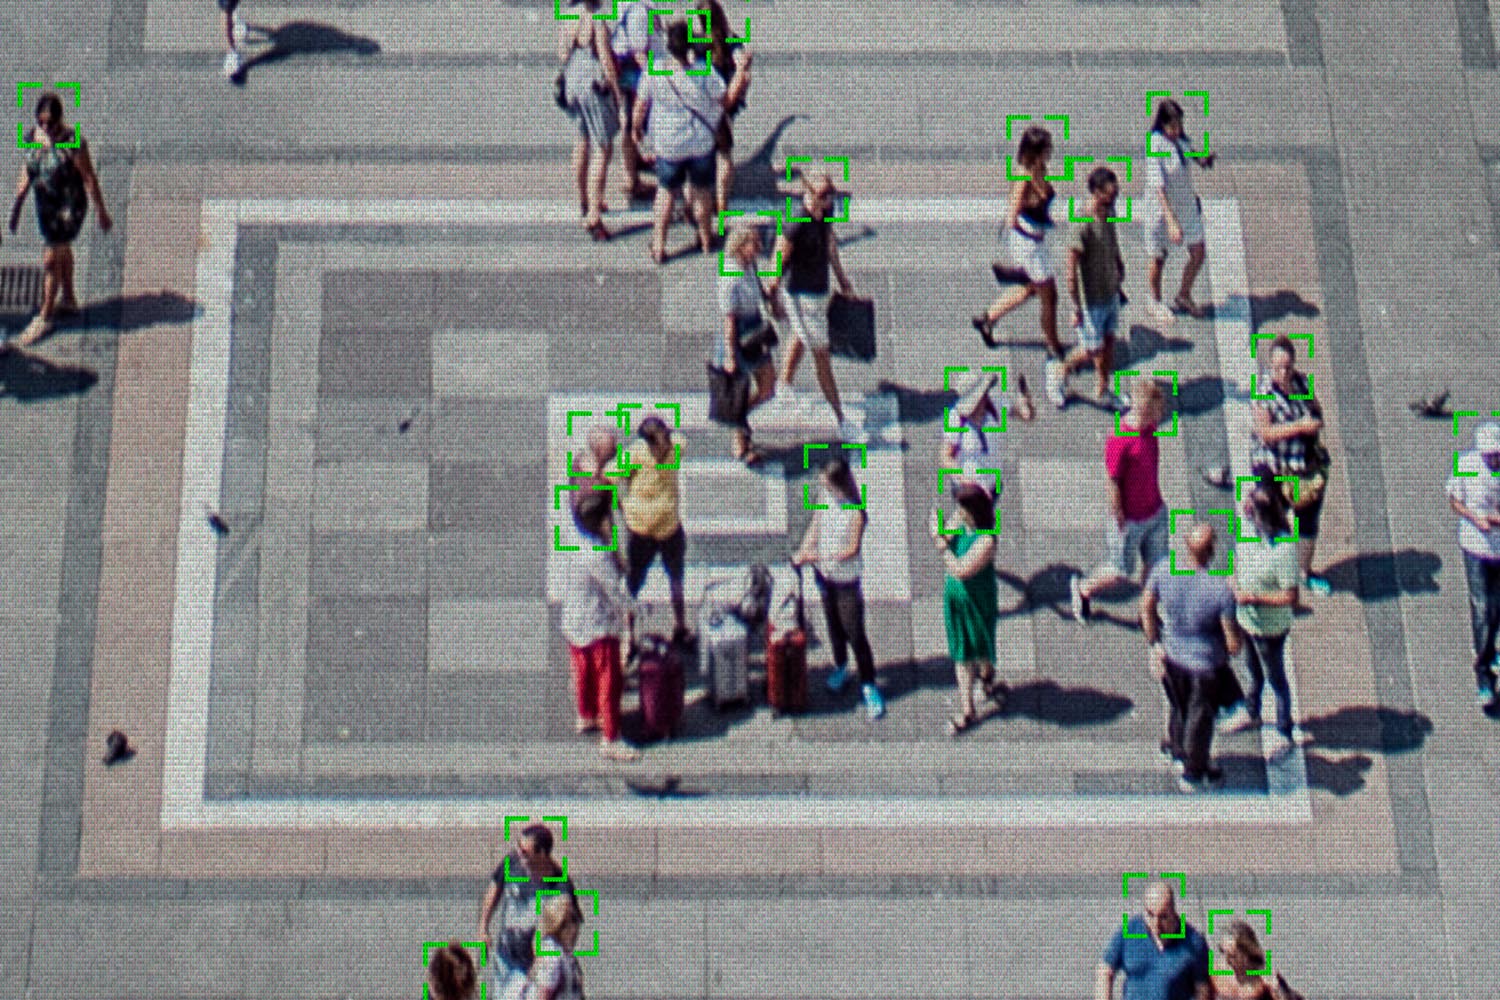 Una cámara de calle detecta las caras y temperaturas de las personas que transitan por una plaza